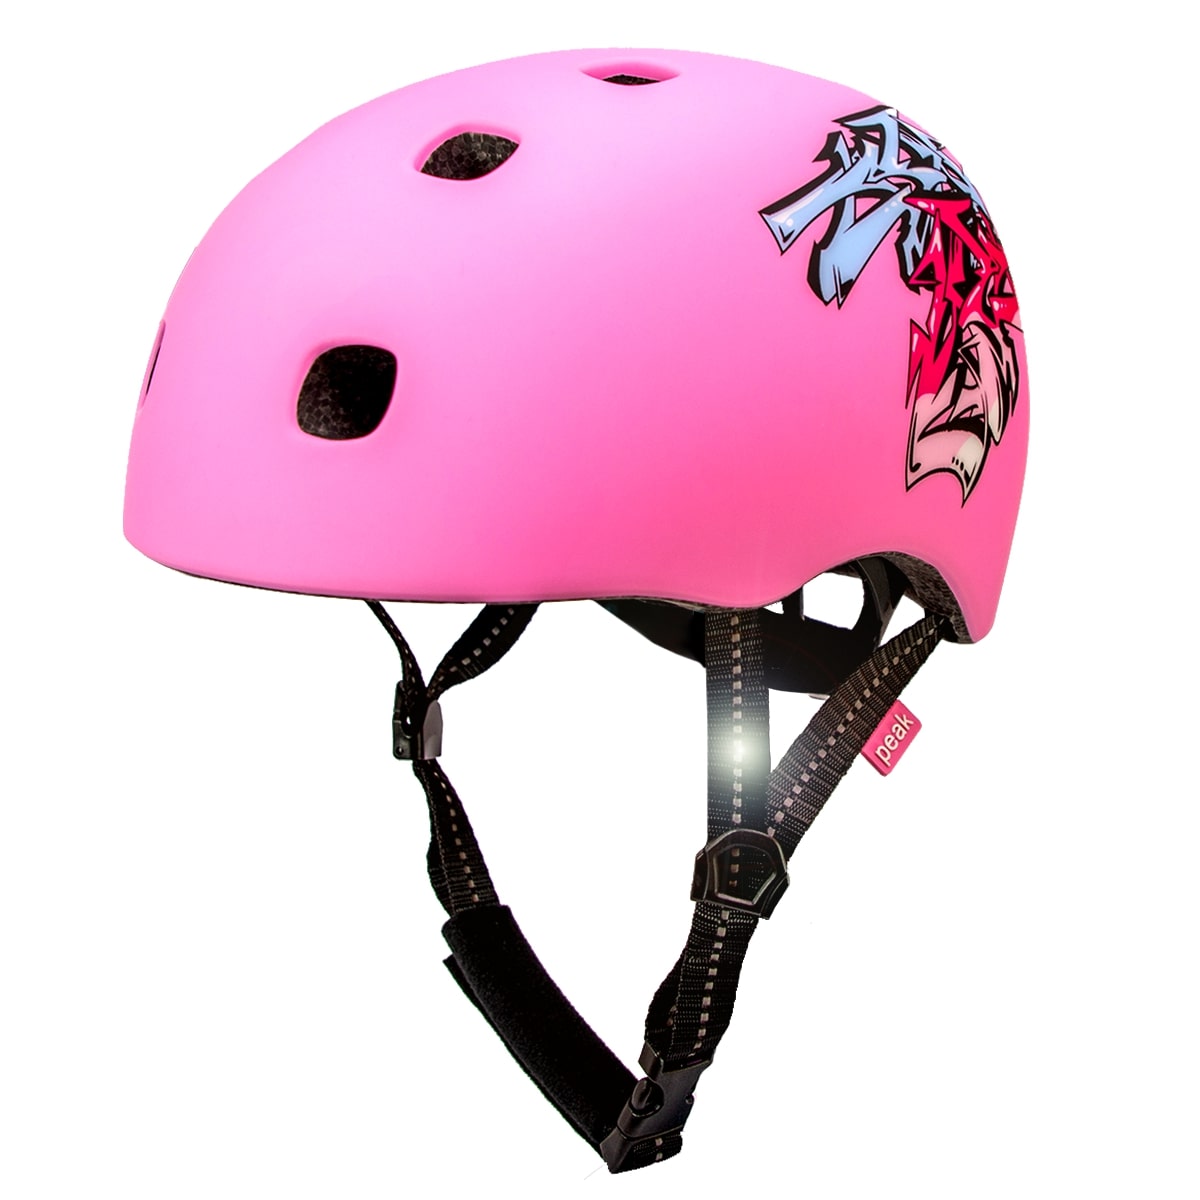 Billede af Crazy Safety pink in-mould Skater cykelhjelm til teens & voksne. Testet, certificeret og godkendt EN1078